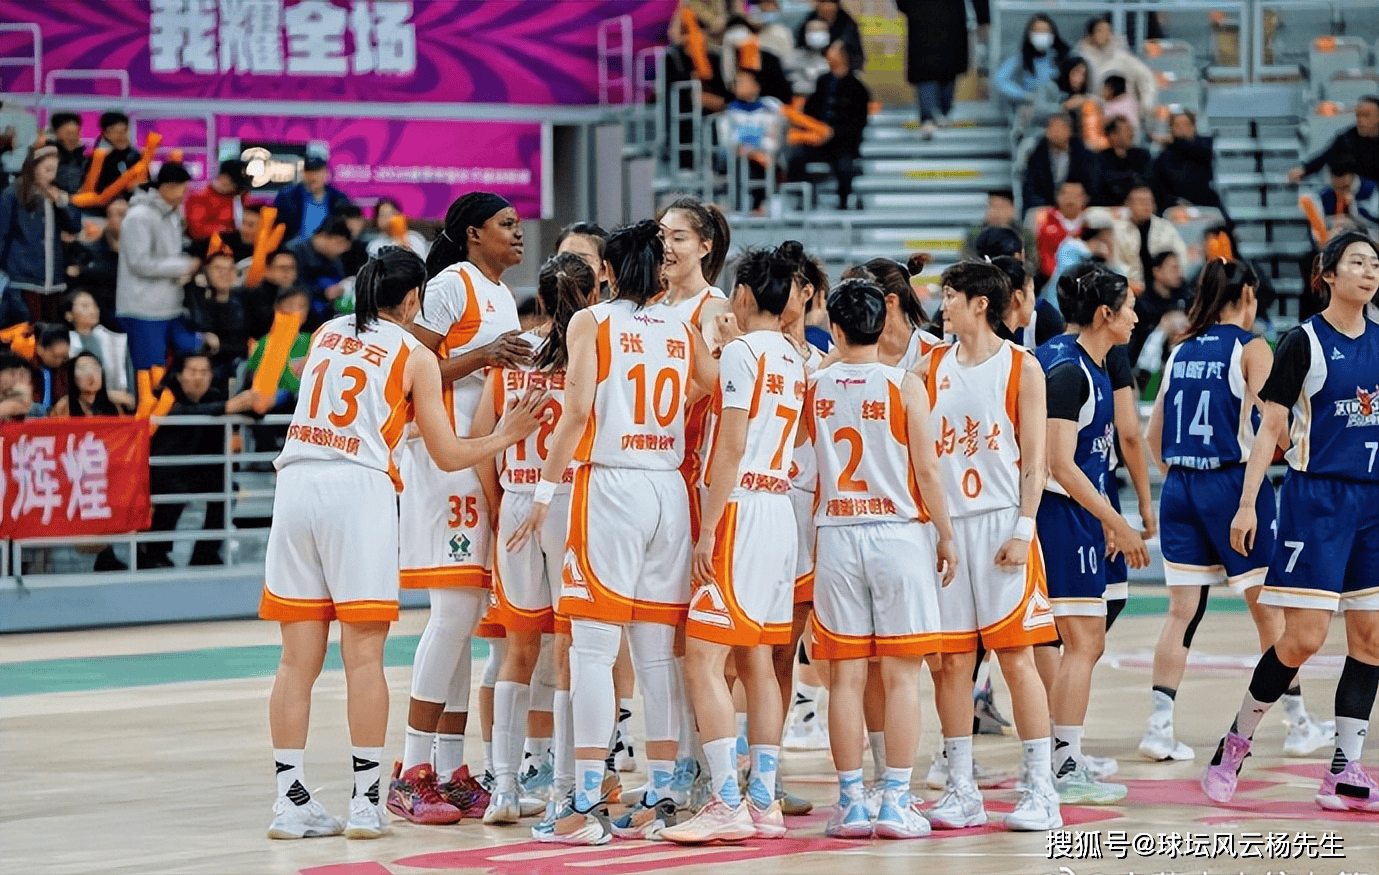 【168sports】谁将问鼎冠军？内蒙古女篮与四川女篮的终极对决即将上演。